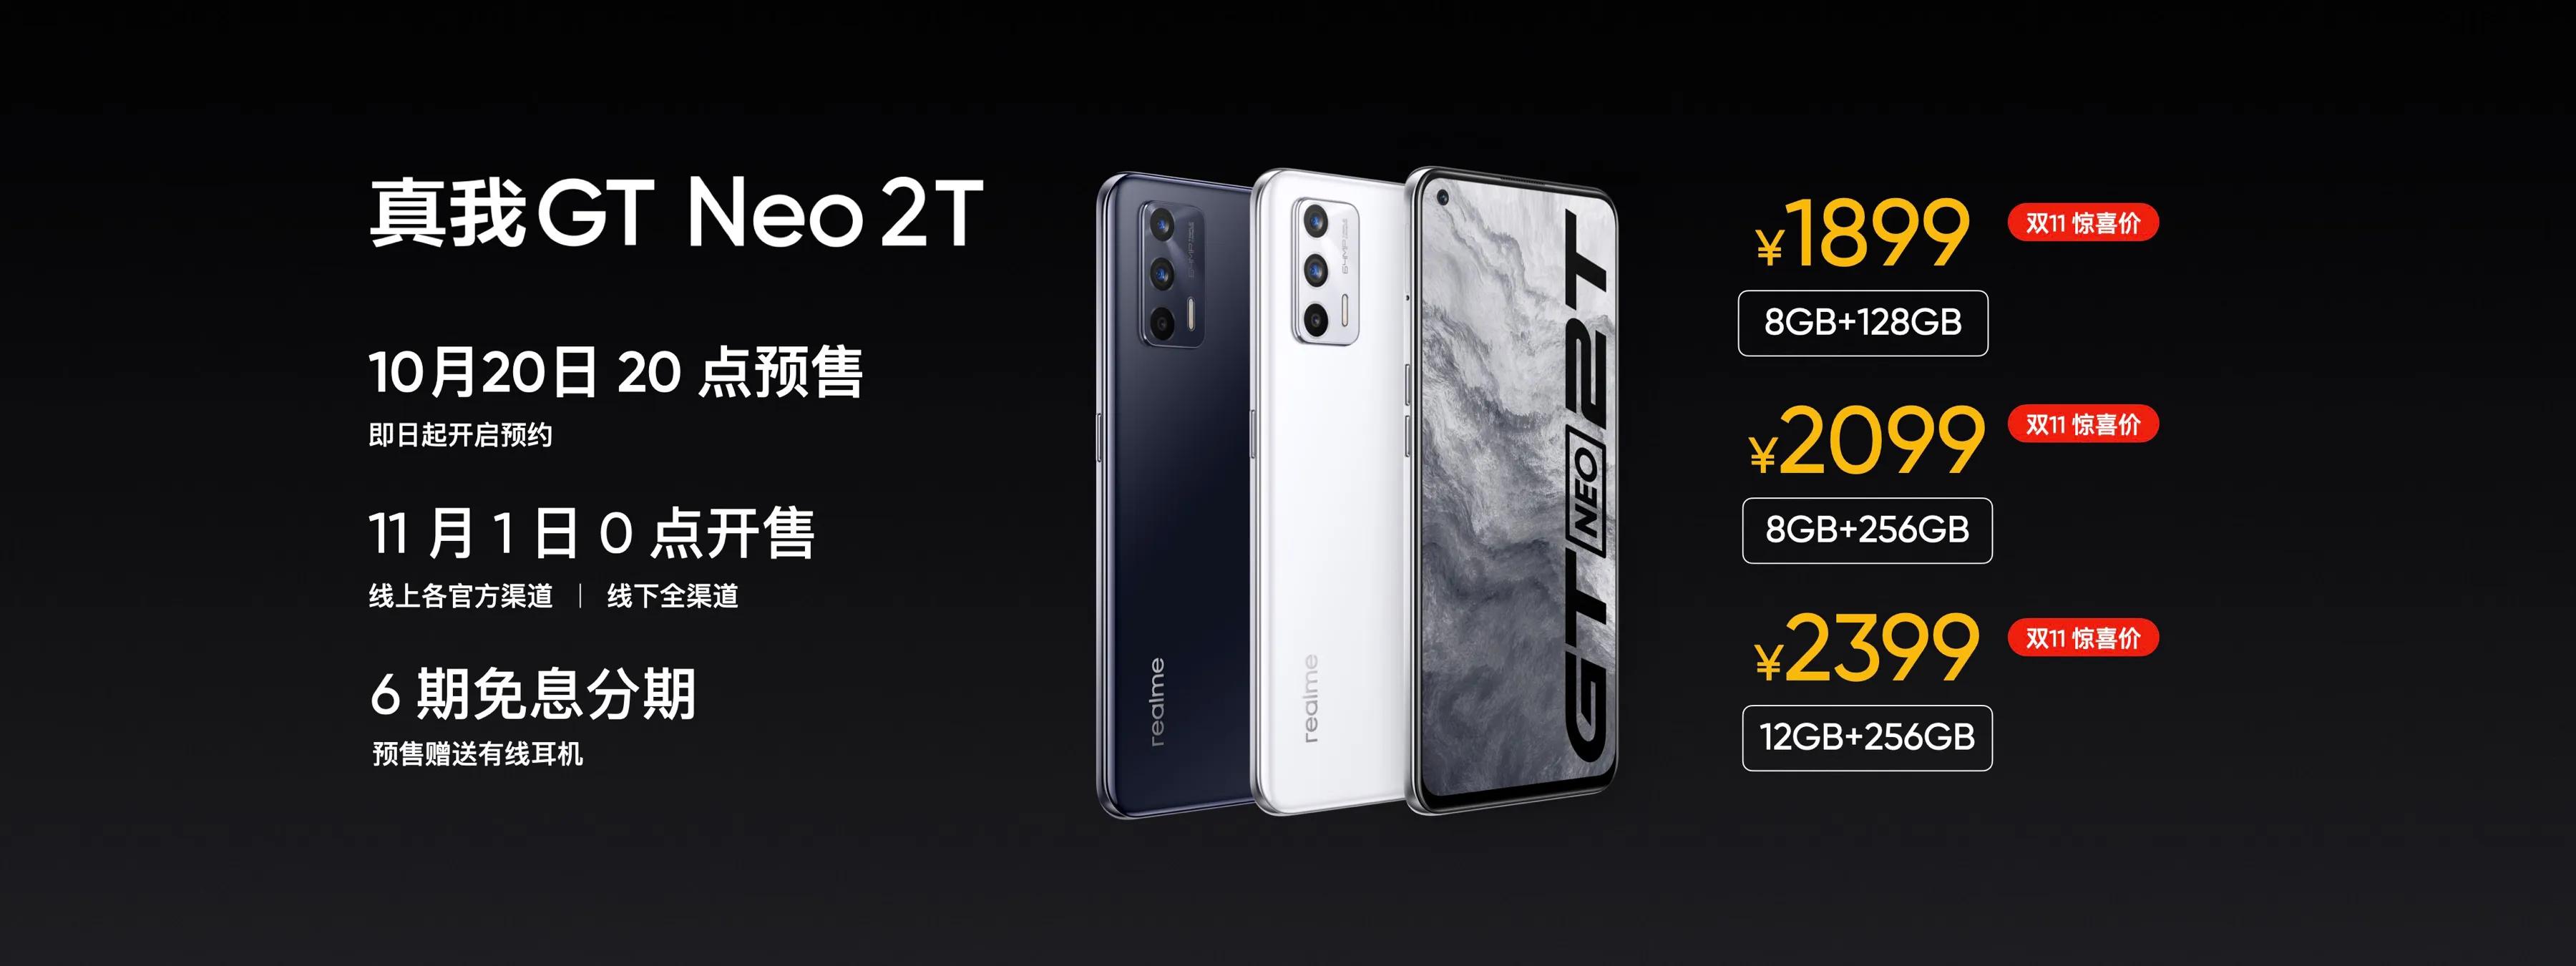 冲刺中国千万销量目标 realme发布真我GT Neo2T等三款产品